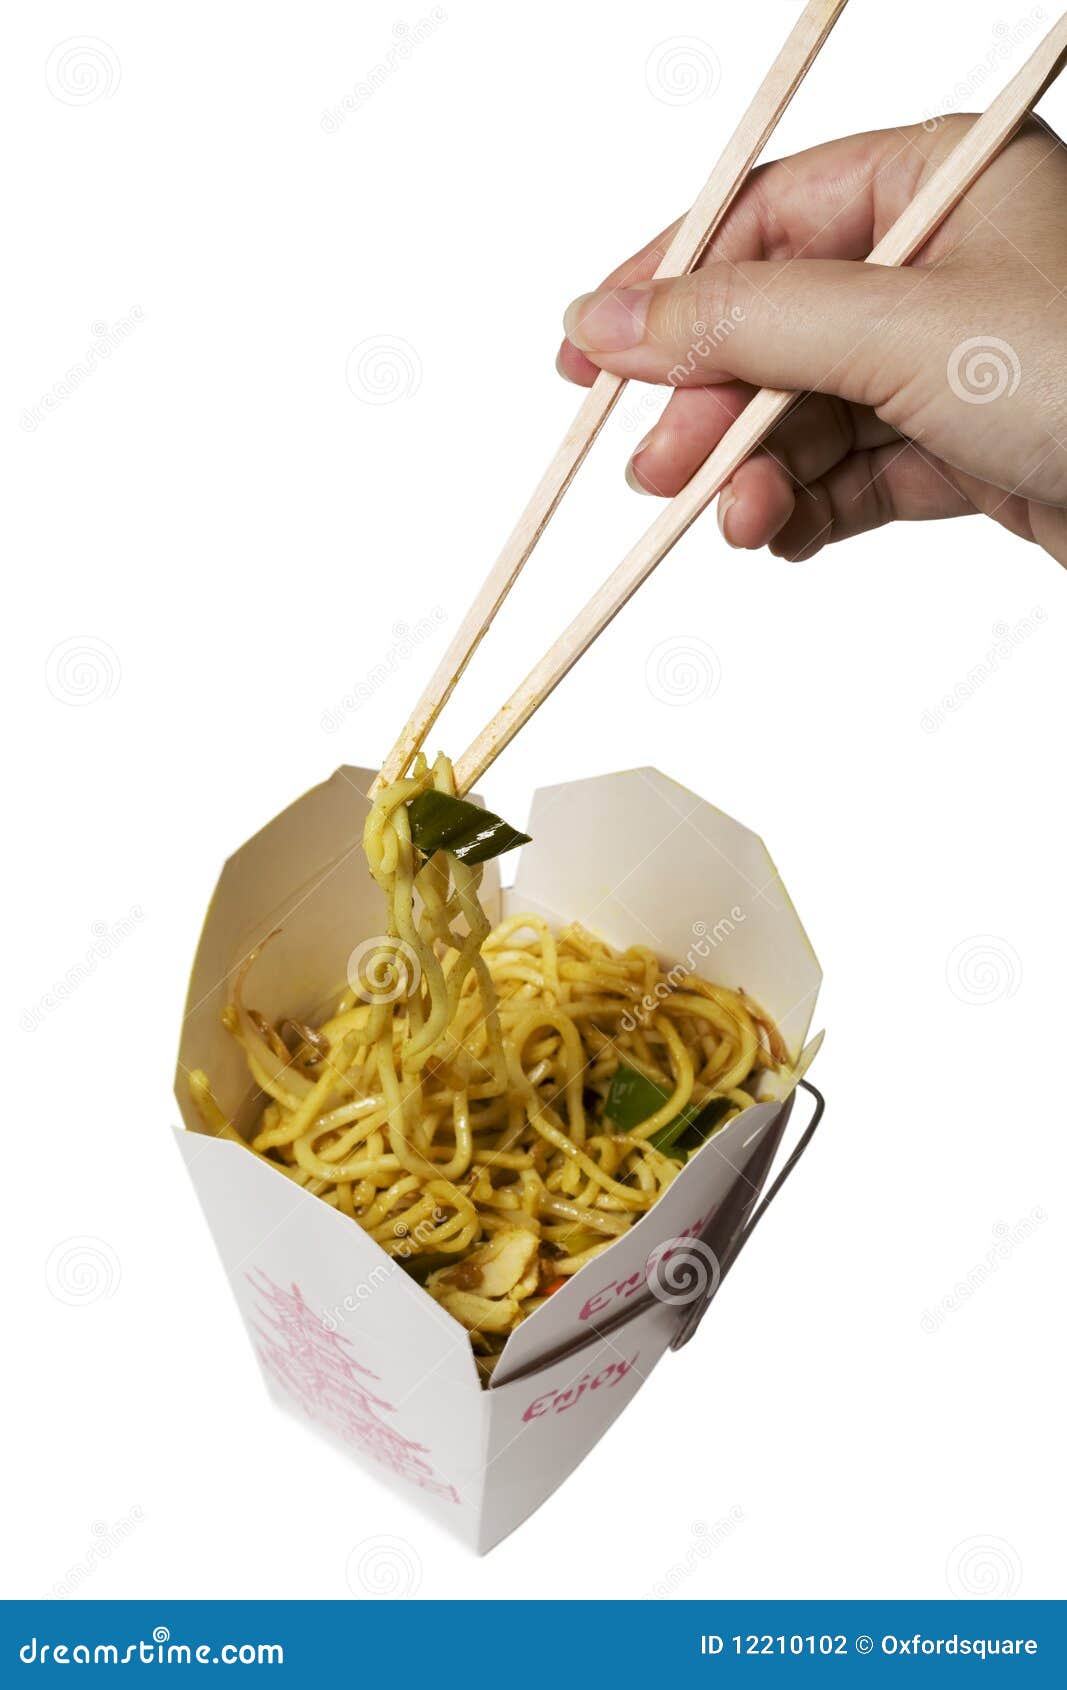 noodle bar